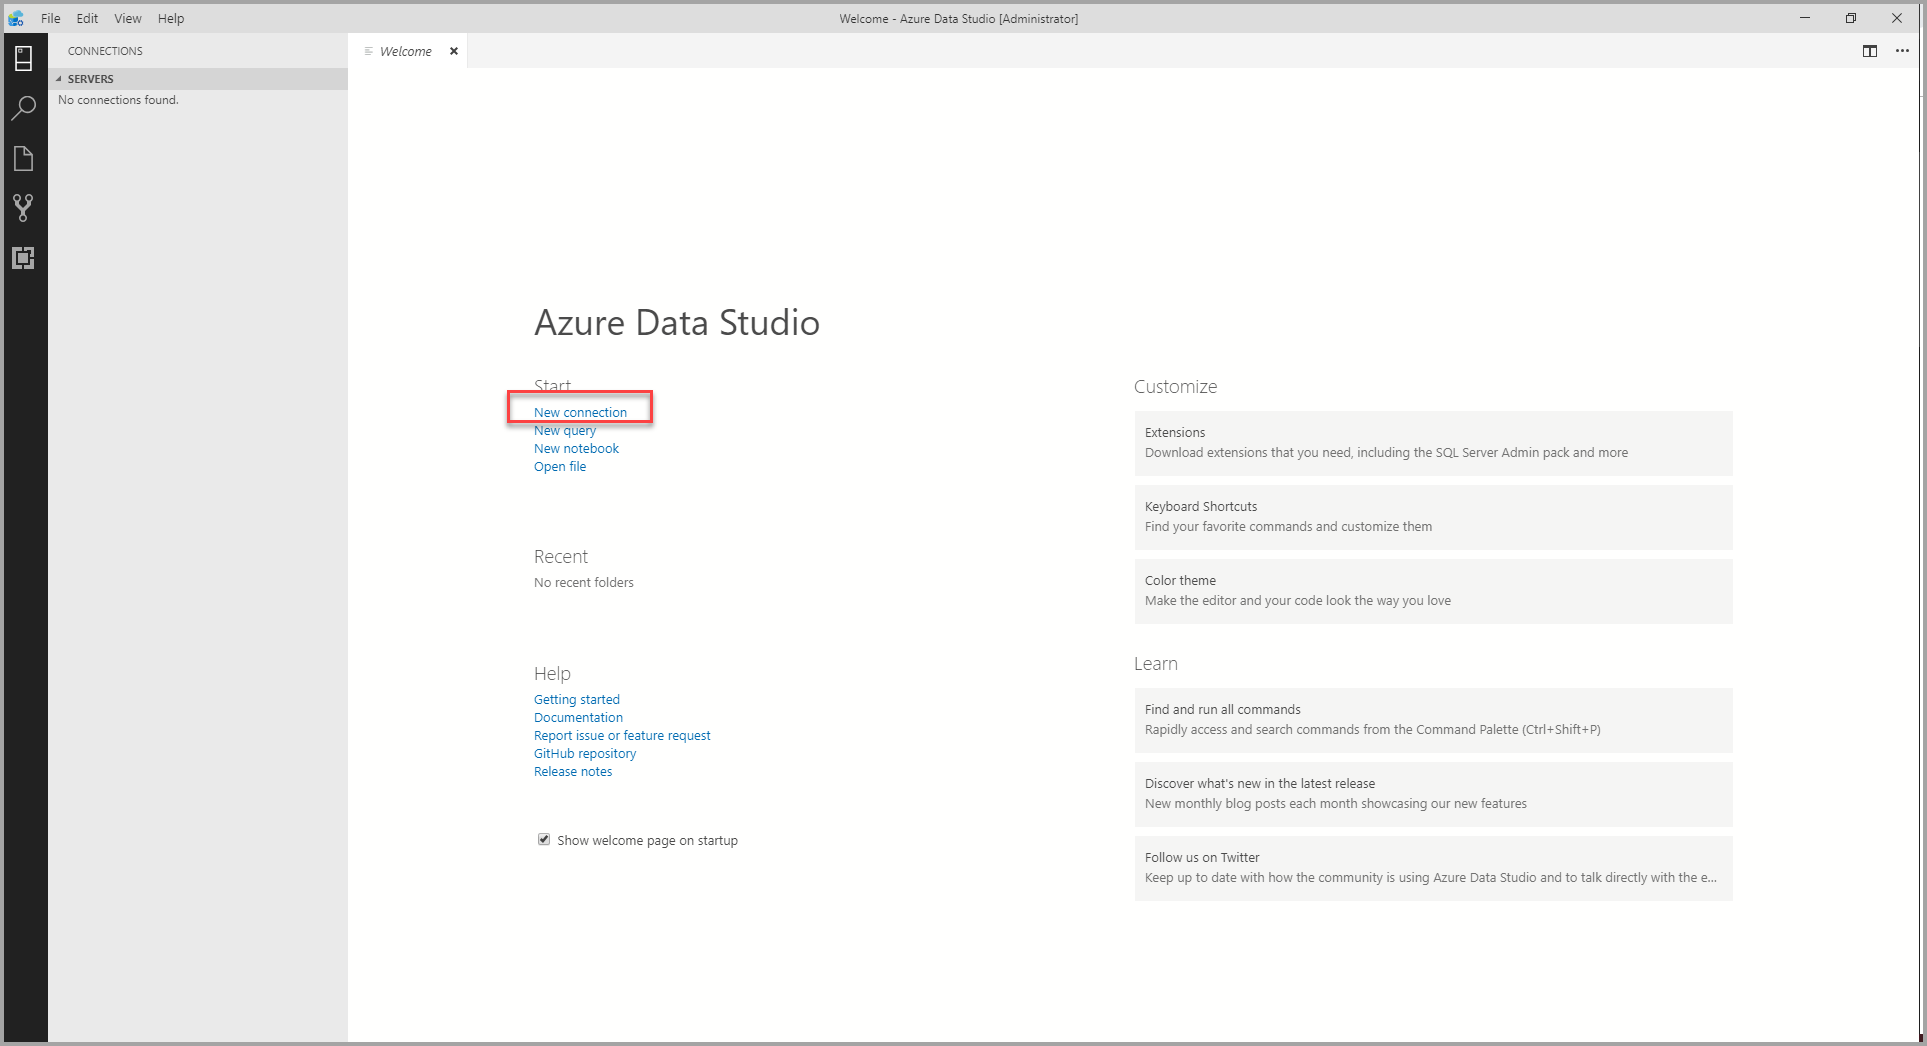 Azure Data Studio: Bạn muốn quản lý dữ liệu một cách hiệu quả và tiện lợi? Vậy thì Azure Data Studio chính là giải pháp tuyệt vời cho bạn! Với các tính năng thông minh và dễ sử dụng, bạn có thể quản lý dữ liệu của mình một cách thông minh hơn bao giờ hết. Hãy cùng xem hình ảnh liên quan đến Azure Data Studio ngay!